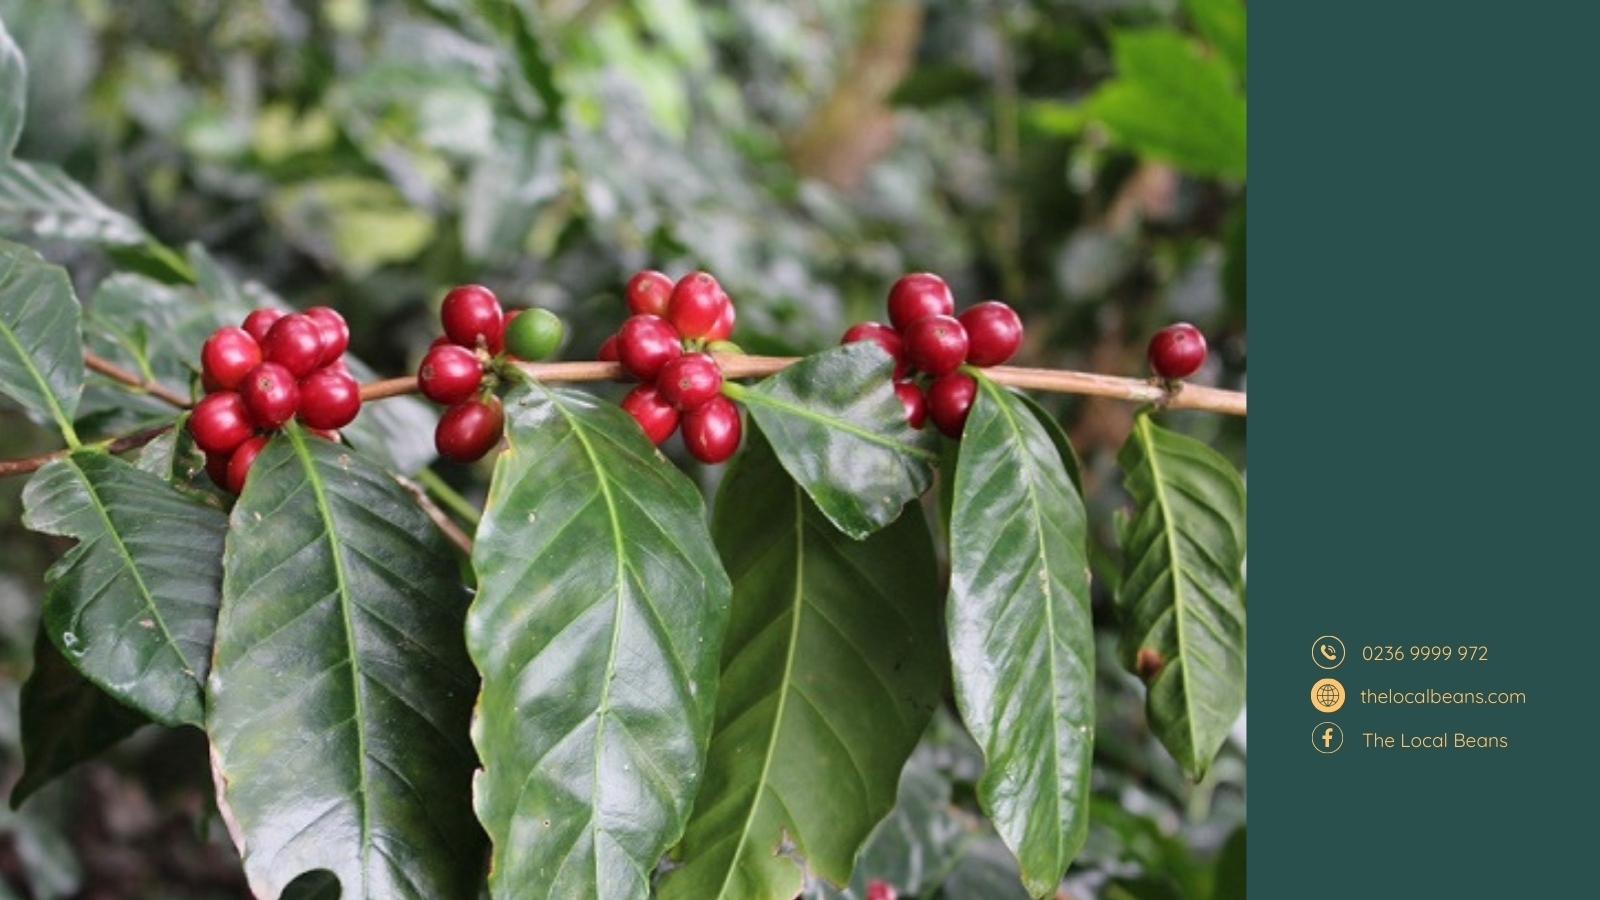 cây cà phê arabica